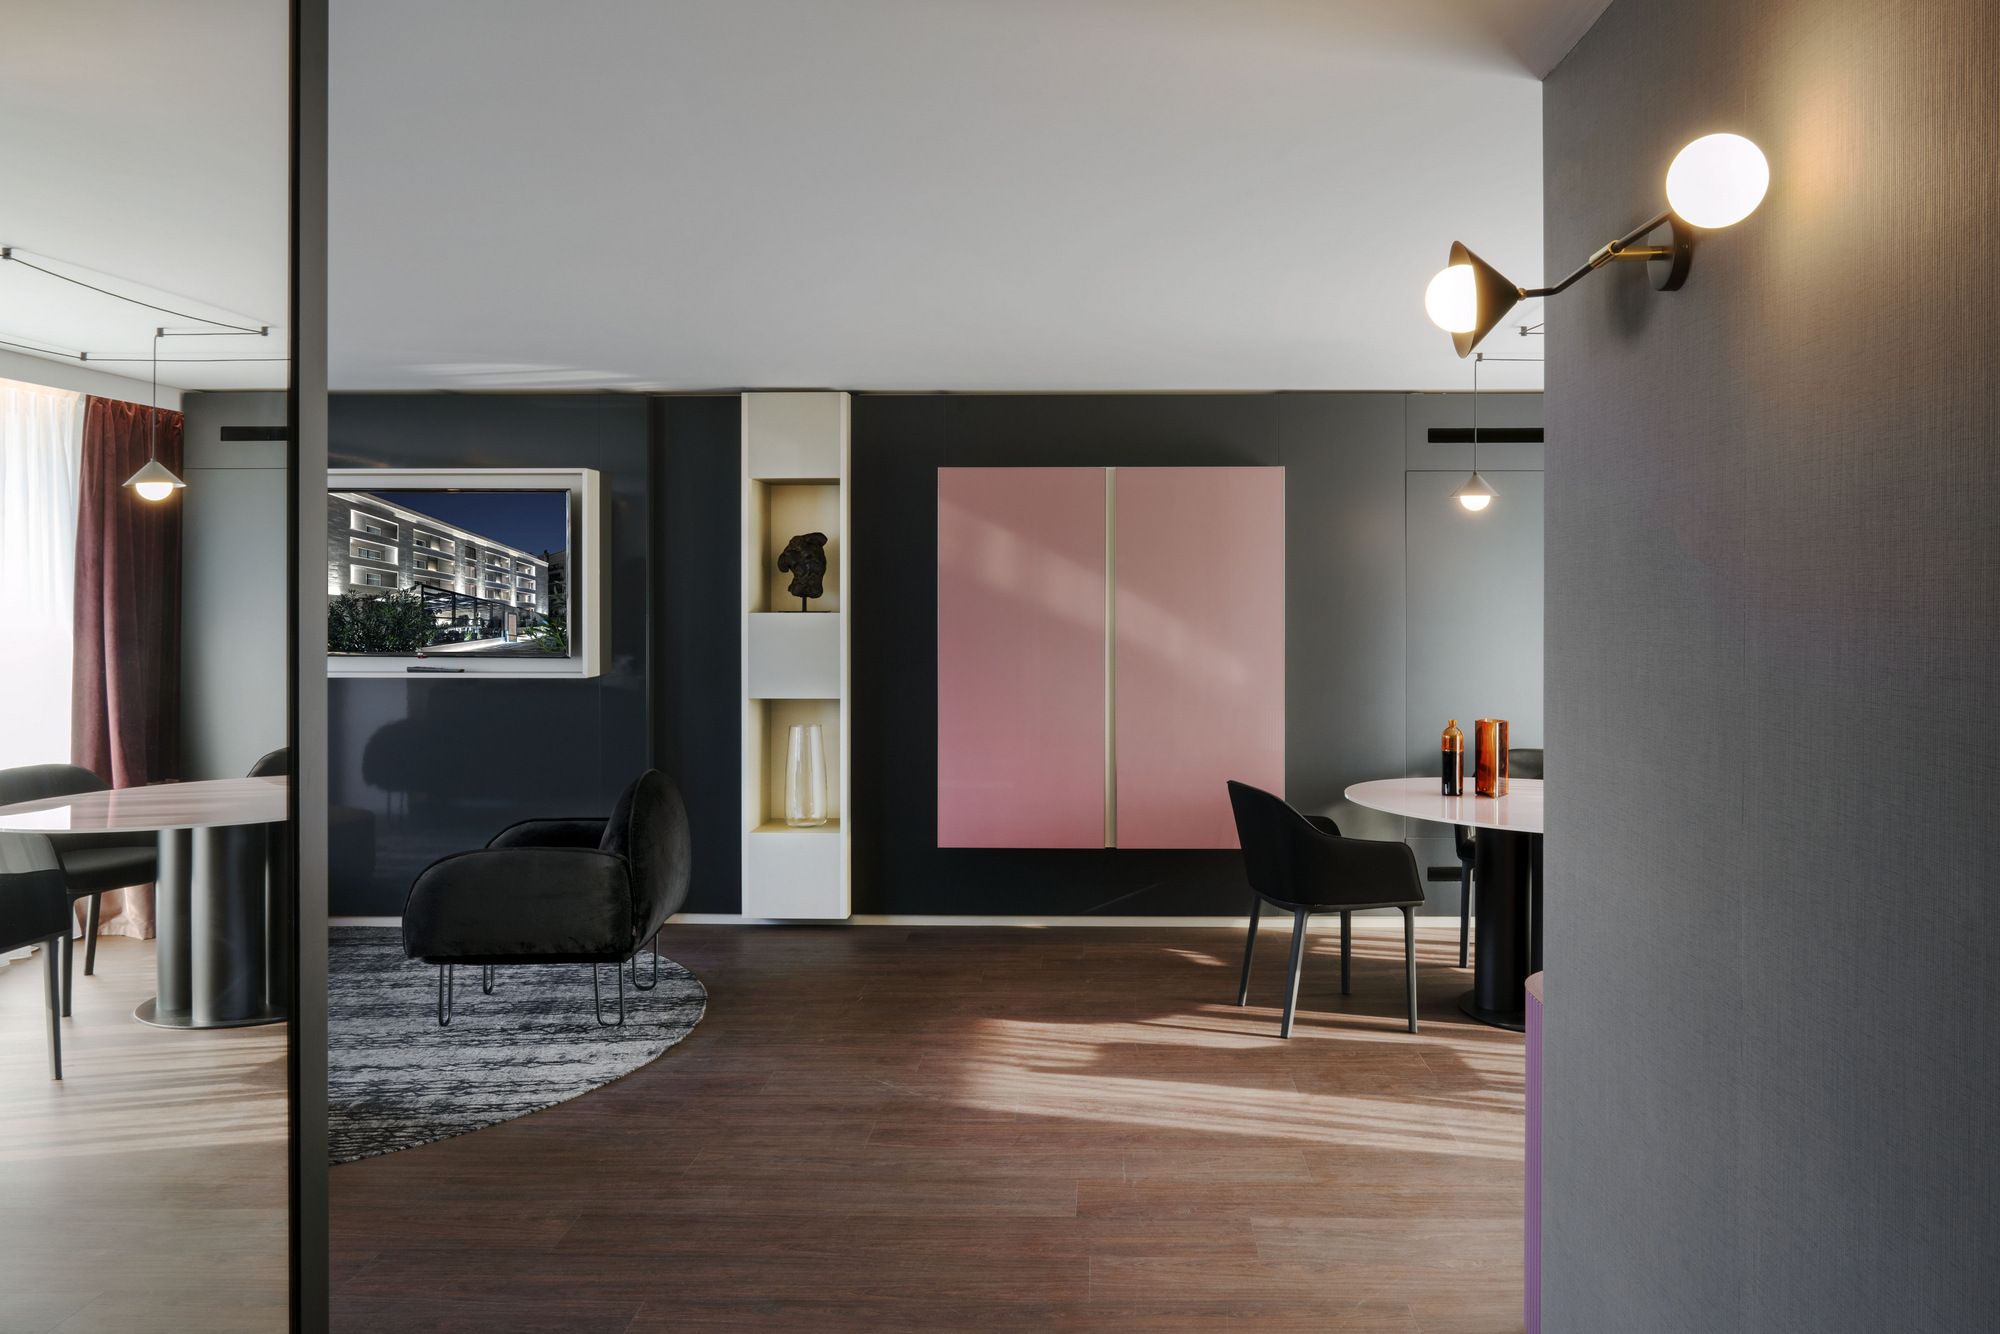 图片[19]|拉套房酒店马特拉|ART-Arrakis | 建筑室内设计的创新与灵感